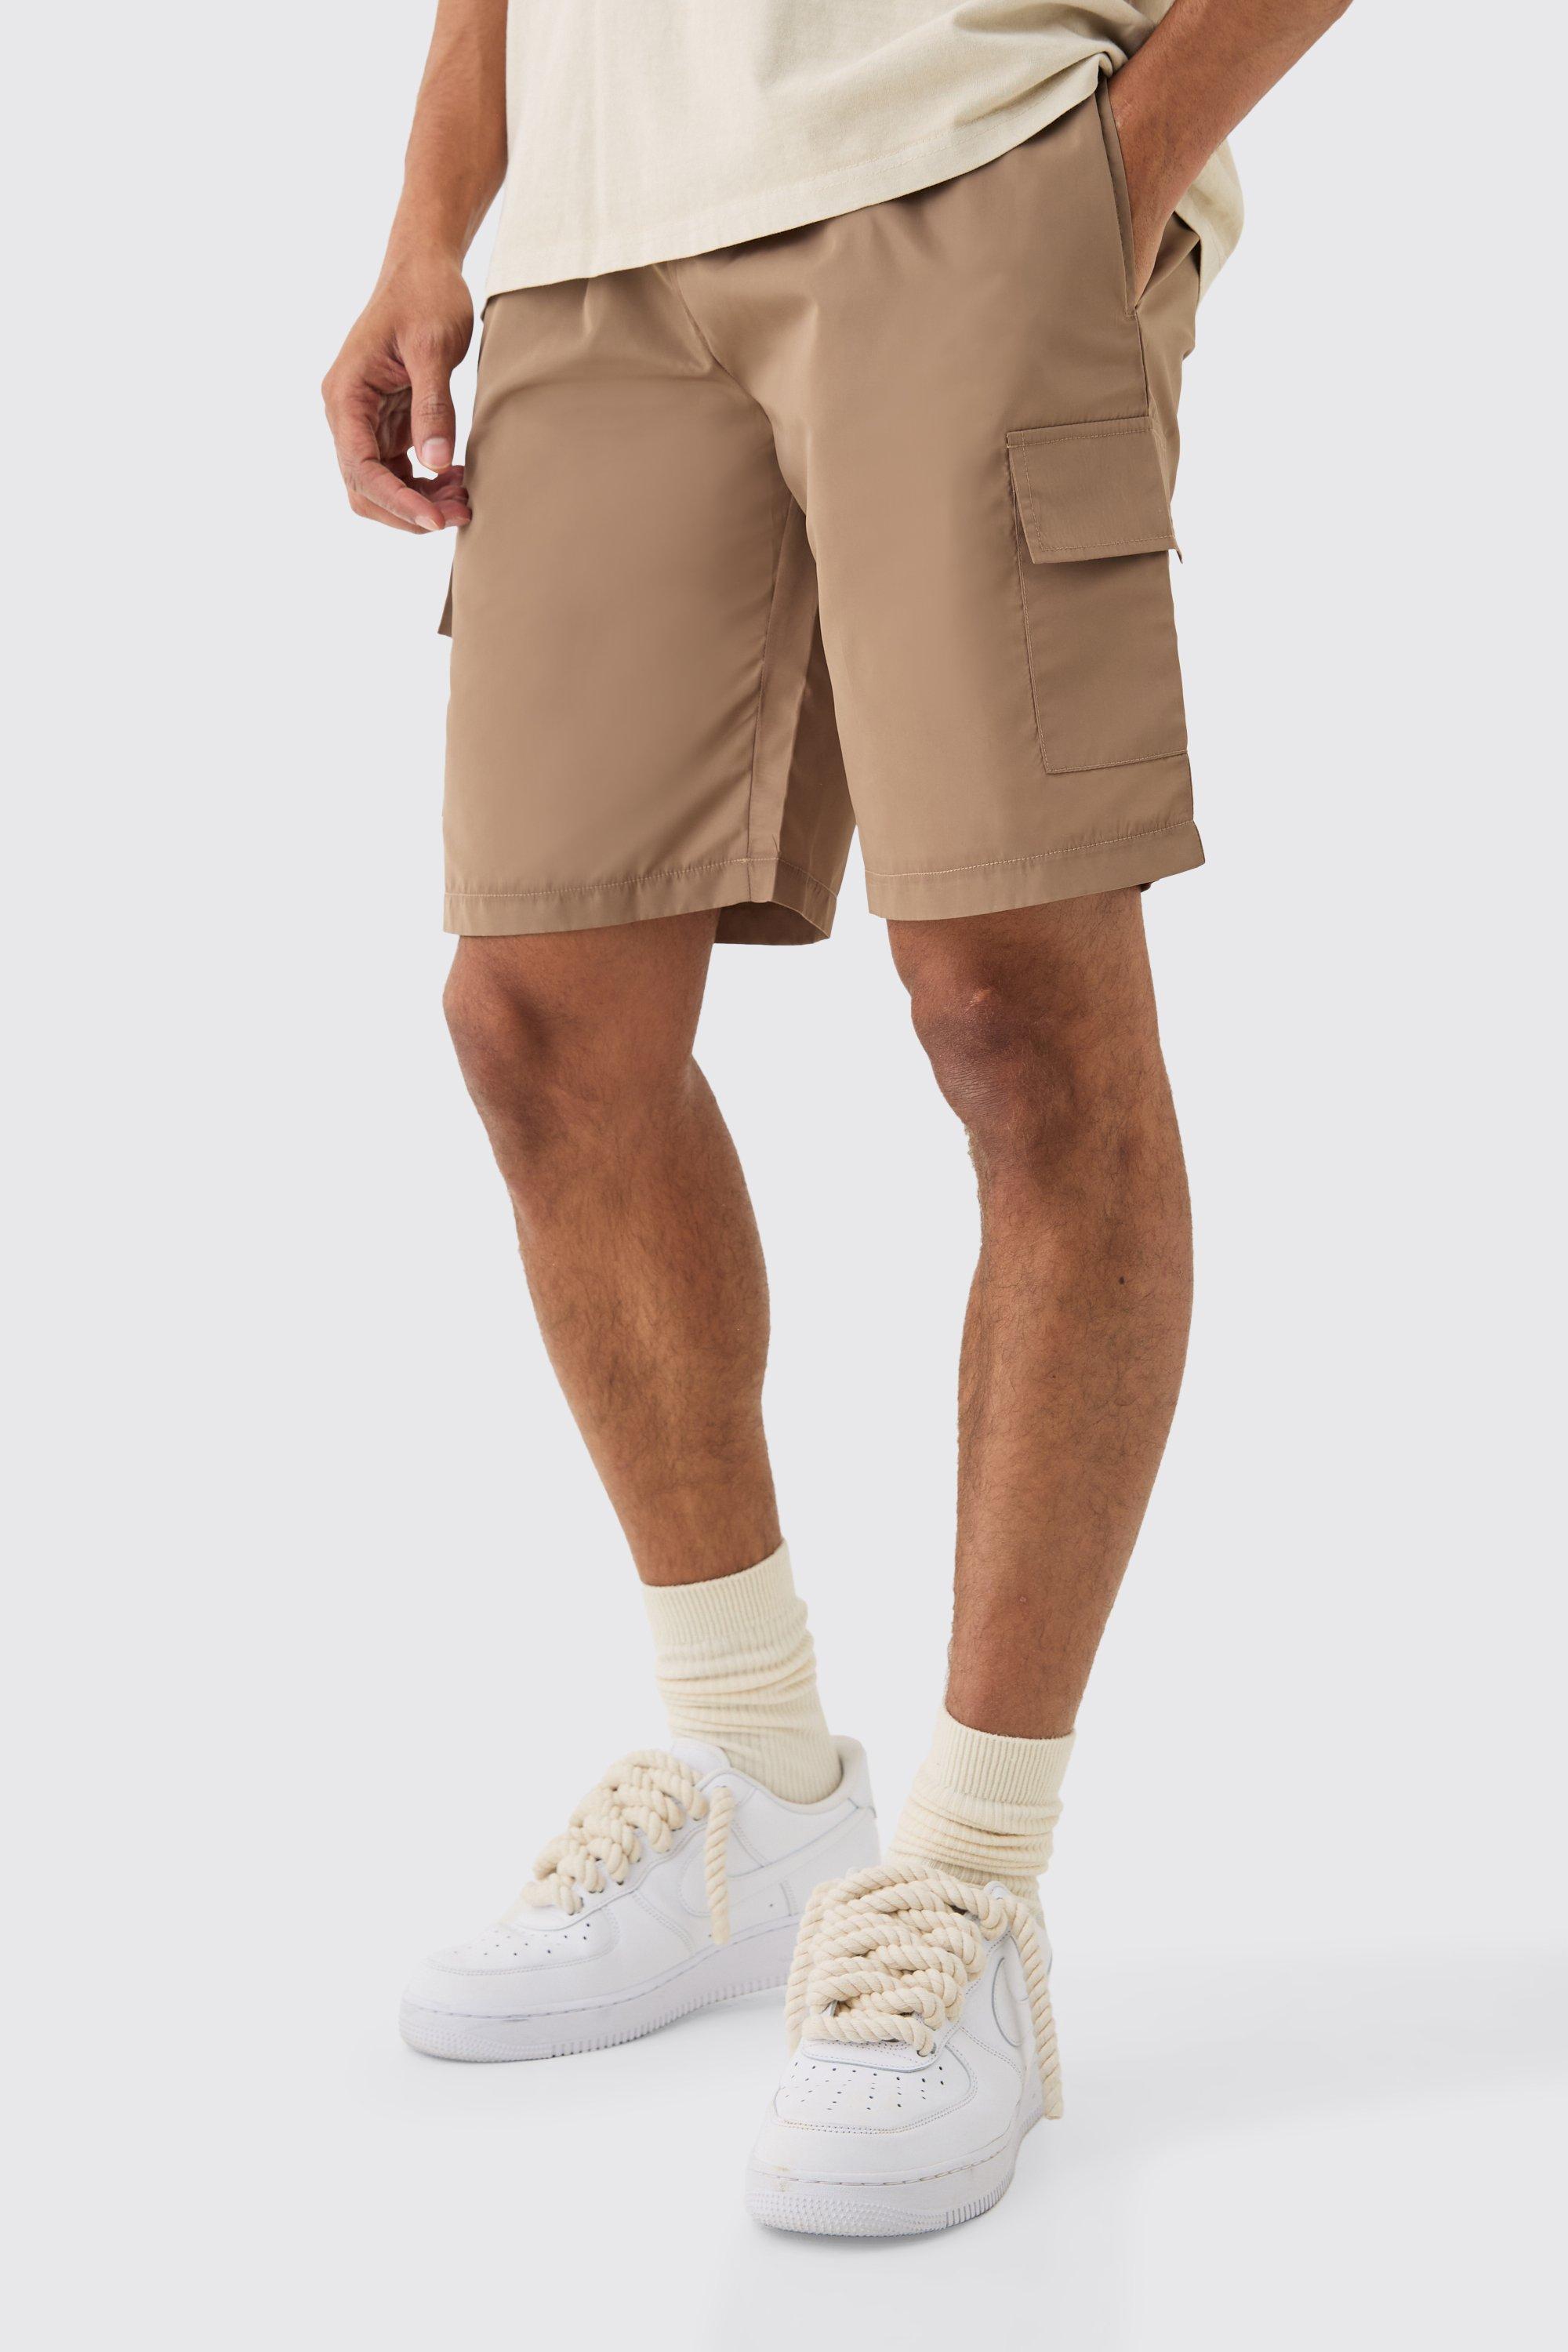 Image of Elastic Waist Toggle Cargo Shorts, Beige